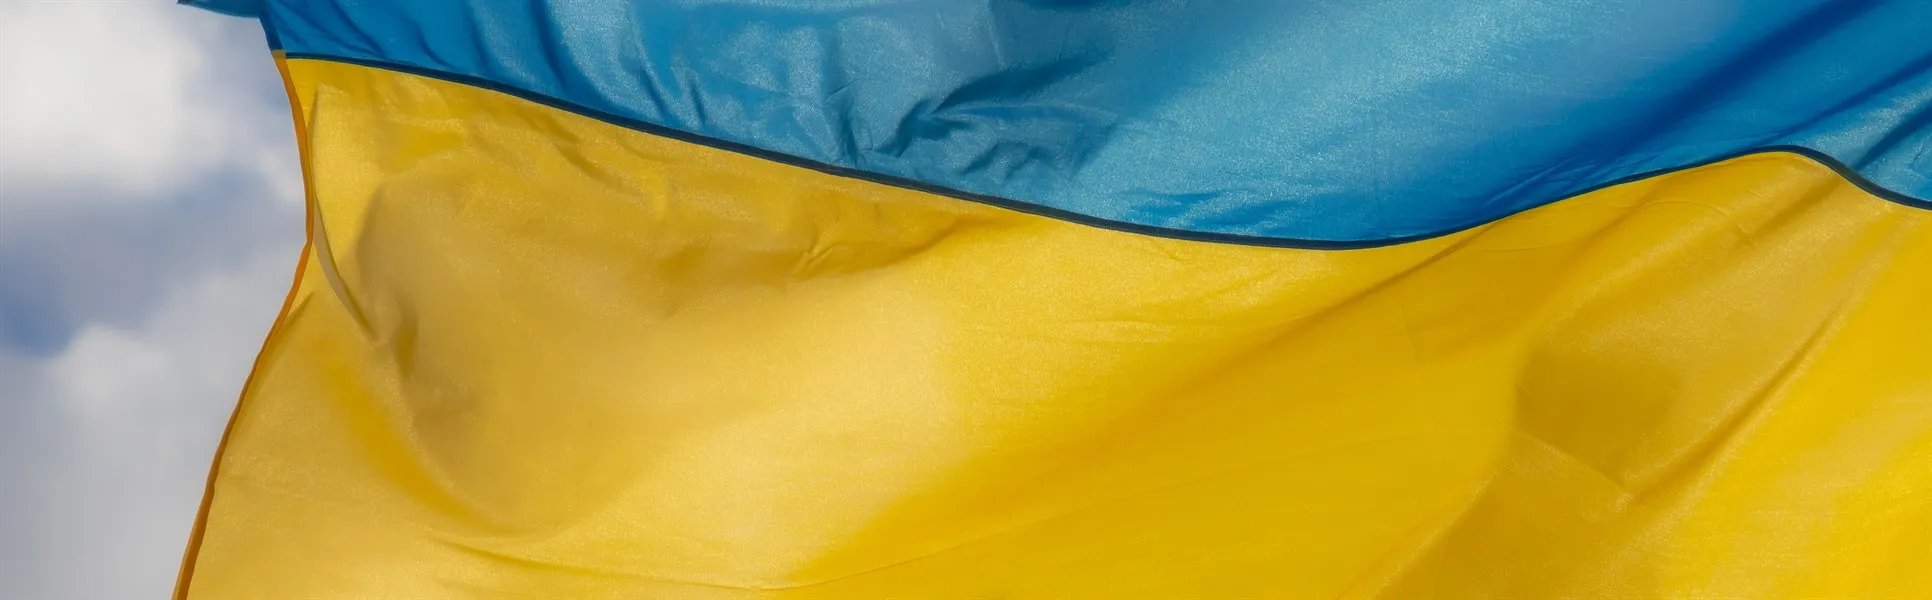 Ukrainas flagga mot himmel